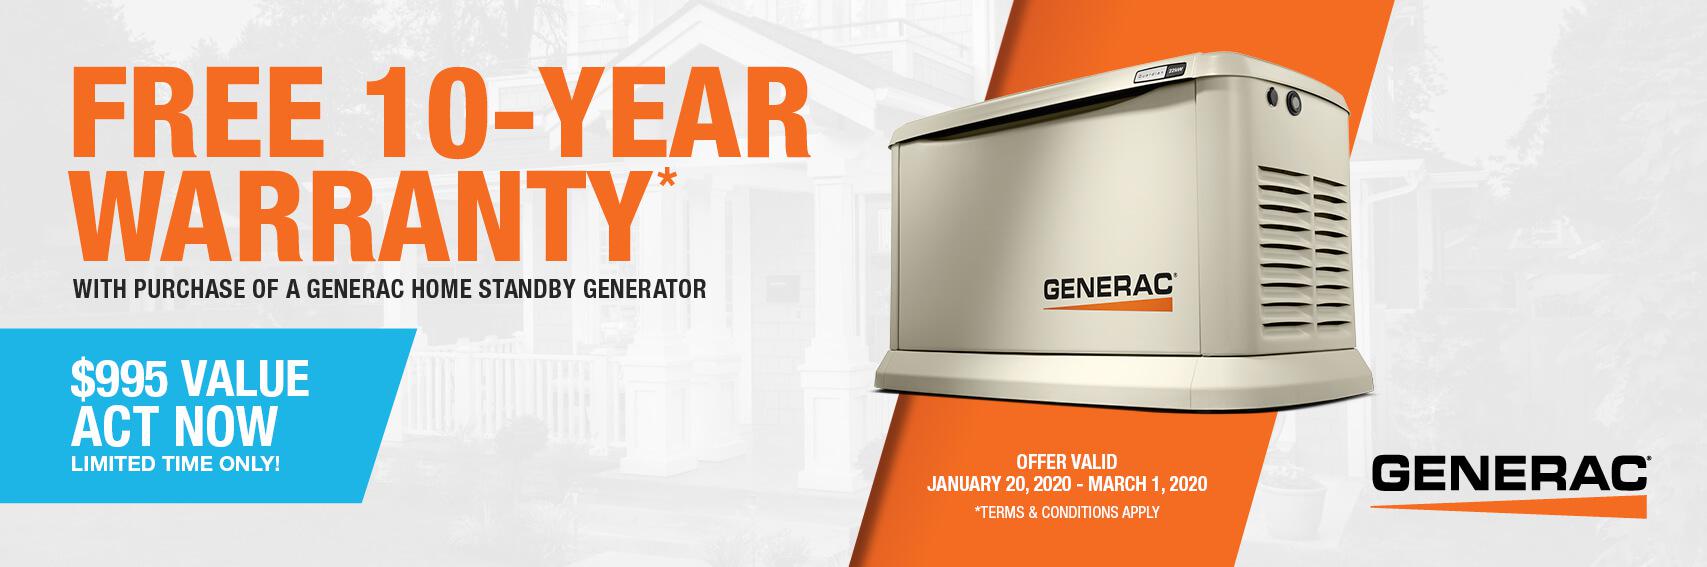 Homestandby Generator Deal | Warranty Offer | Generac Dealer | Bradner, OH